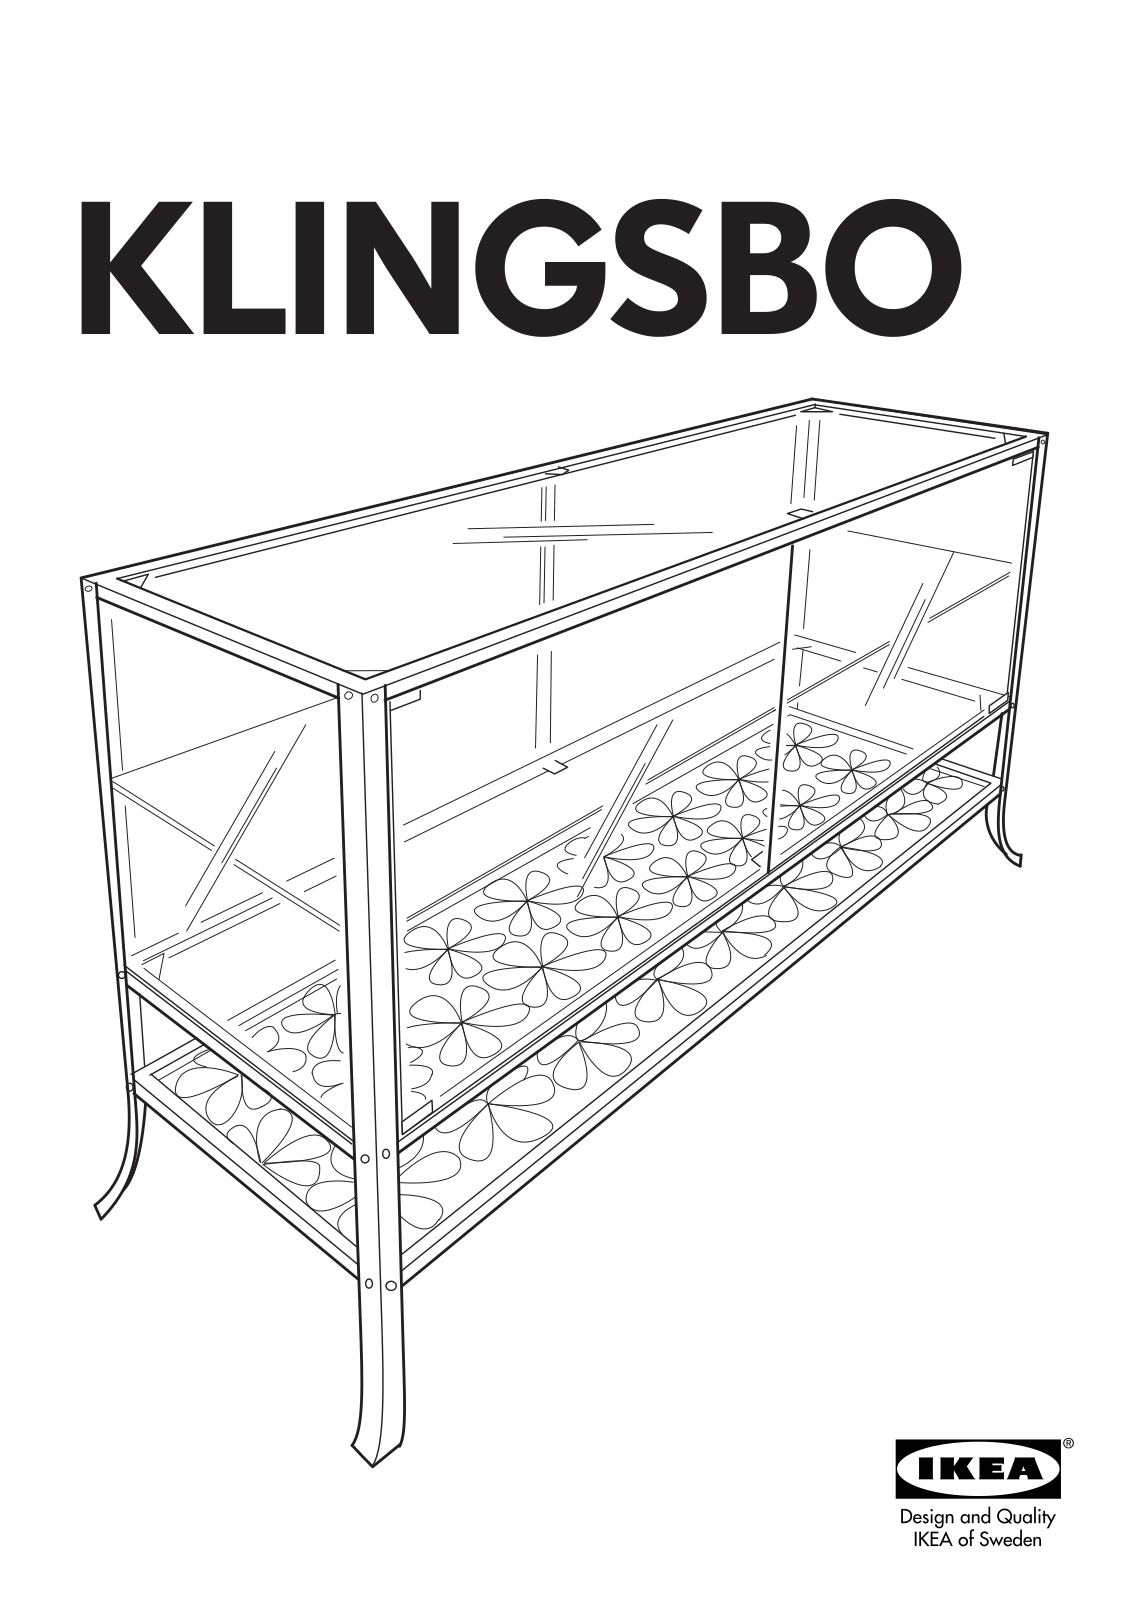 IKEA KLINGSBO GLASS DOOR CABINET 47X31